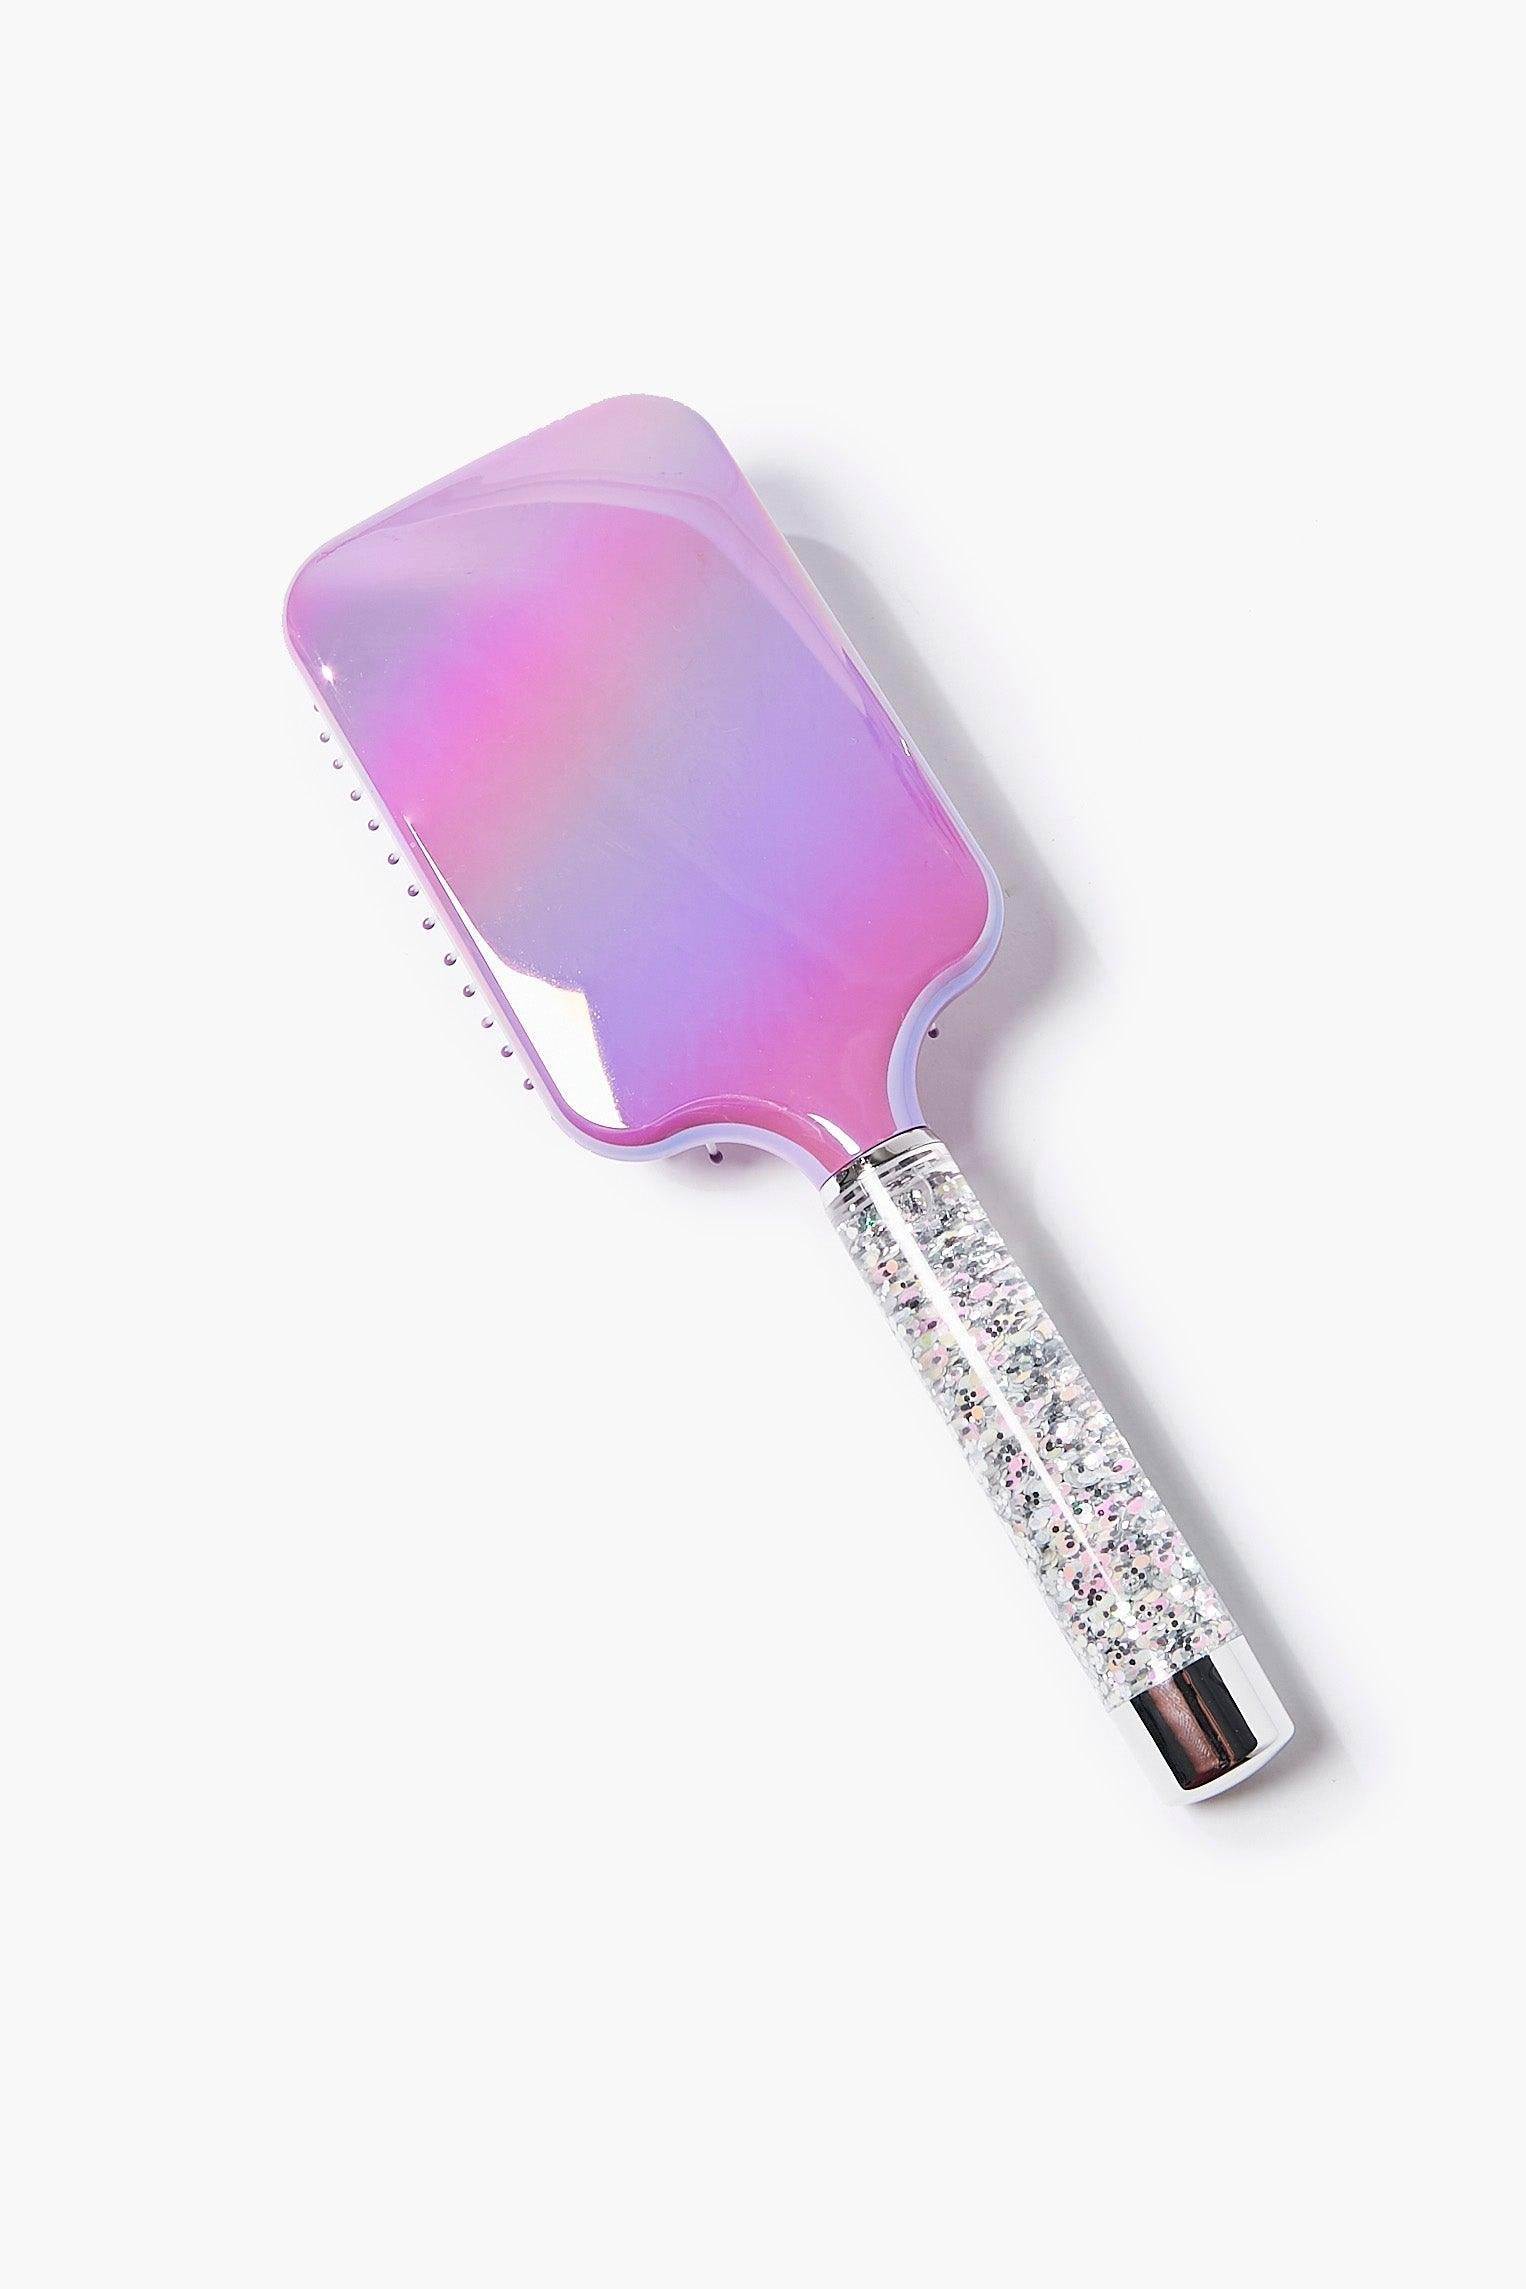 Purplemulti Glitter Square Paddle Hair Brush 2